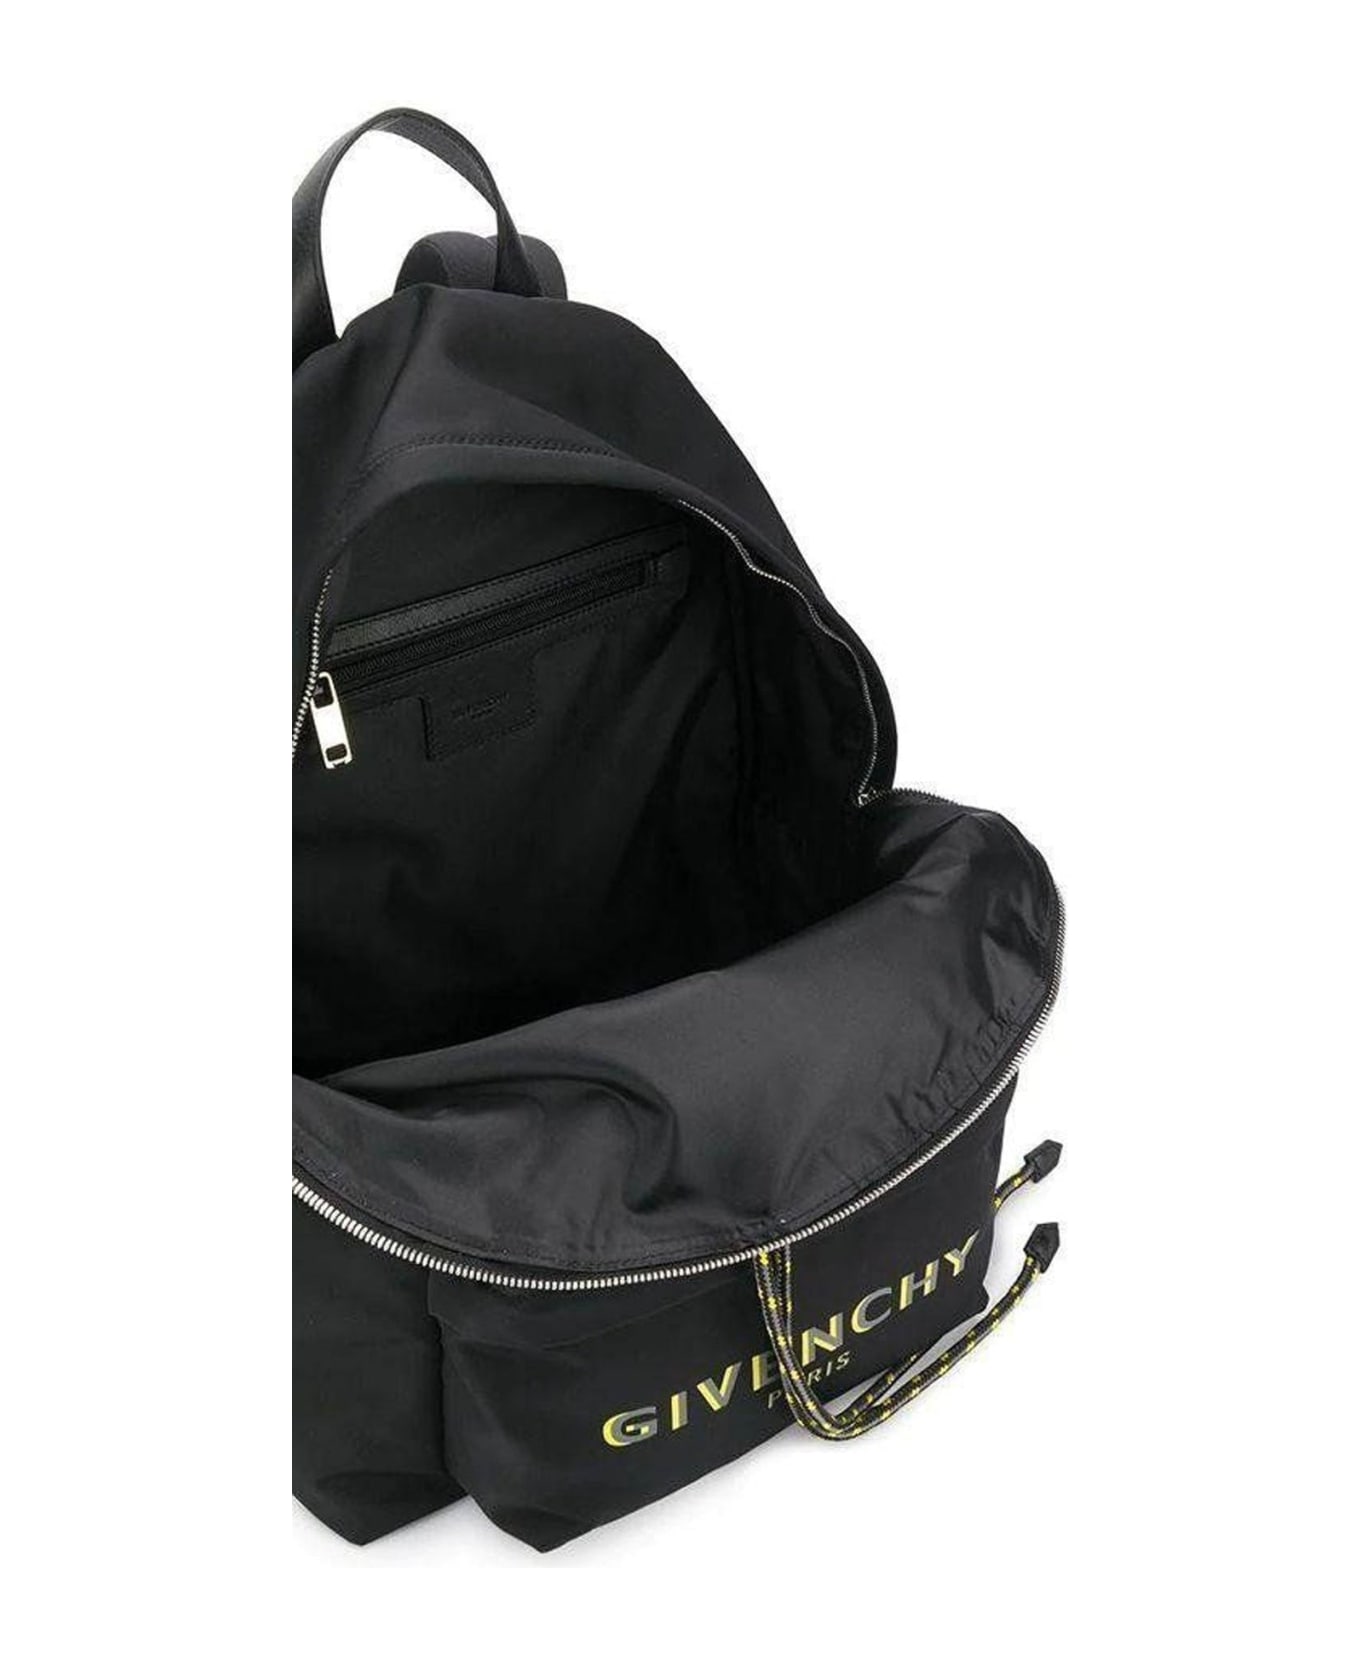 Givenchy Logo Backpack - Black バックパック